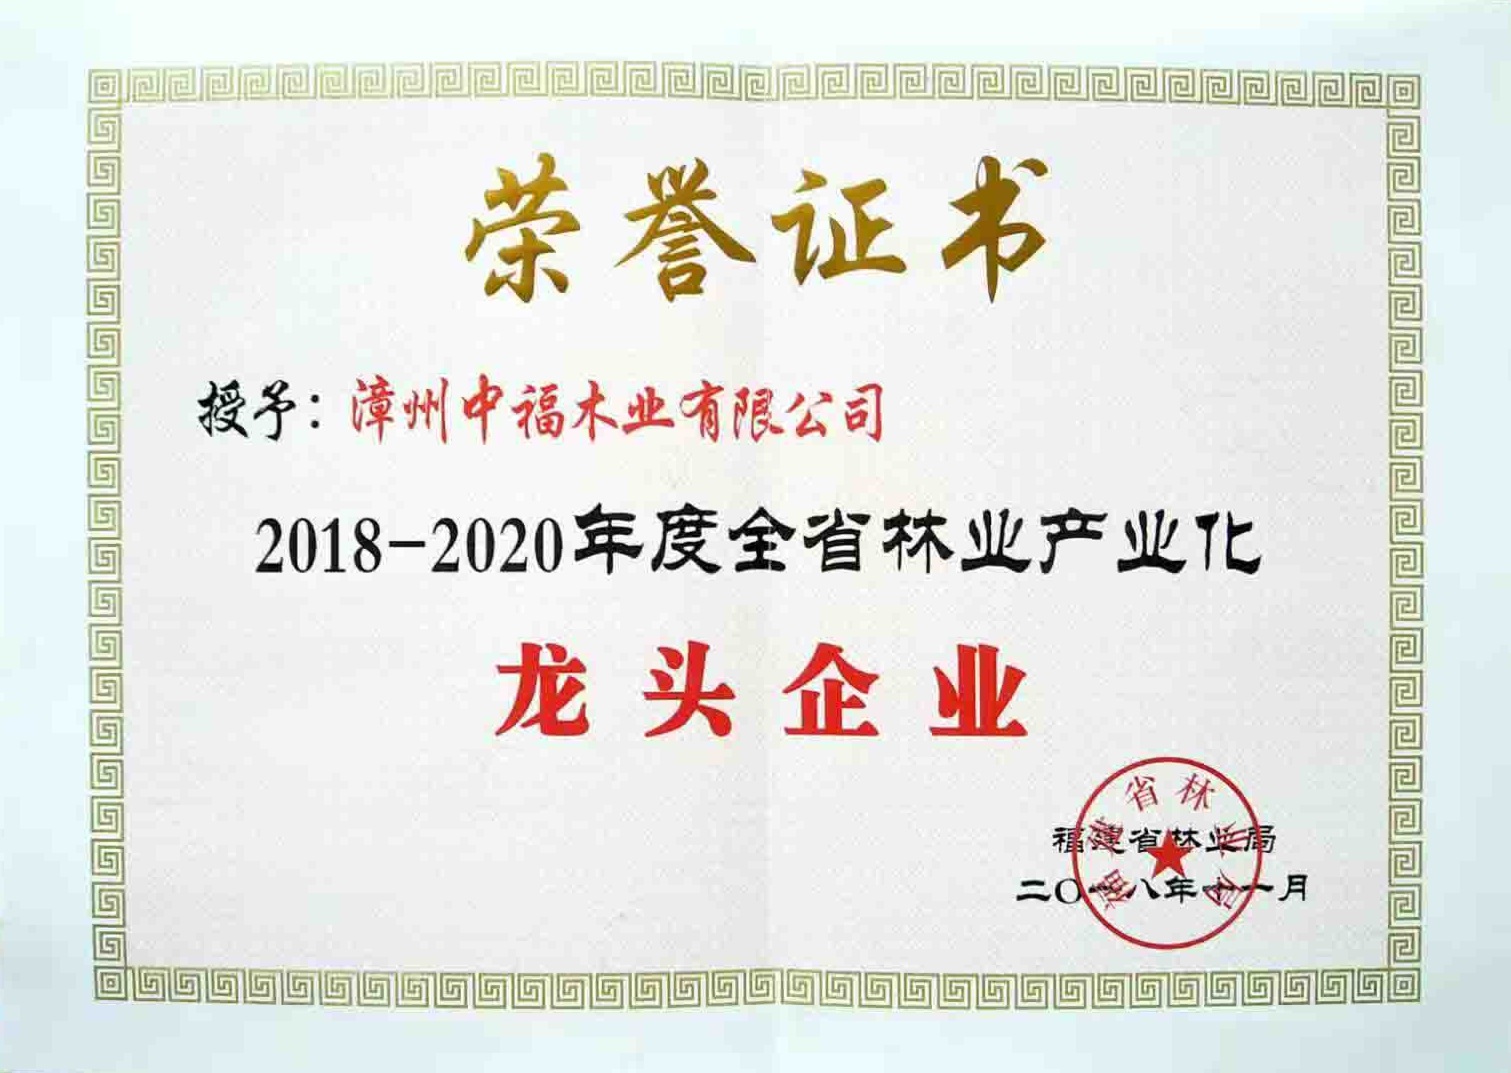 2018-2020年度全省林业产业化龙头企业证书